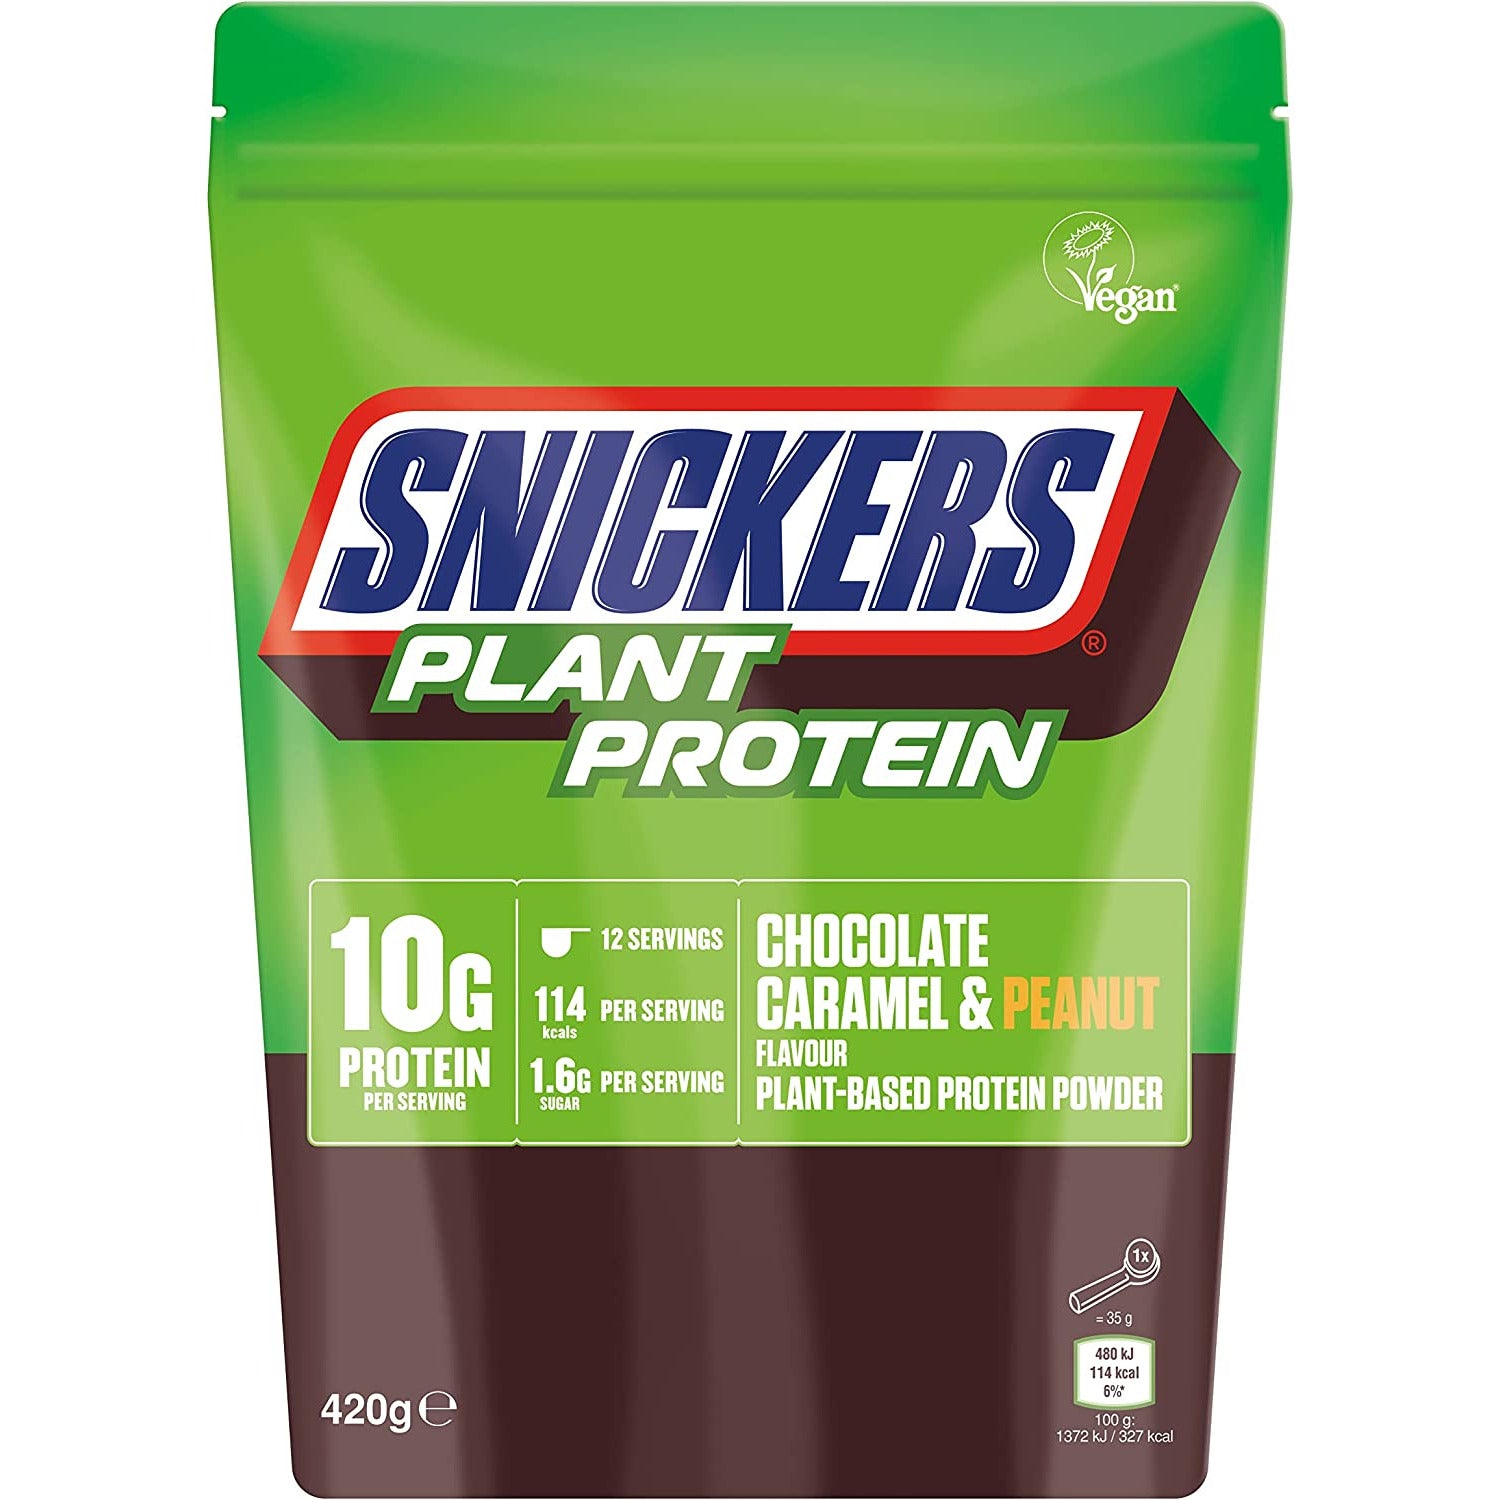 Mars Brand HI PROTEIN VEGAN Protein Powder (420g) Vegan Protein Snickers (Choc Caramel & Peanut) BEST BY SEPT 27, 2023 Mars Brand mars-hi-protein-plant-based-protein-powder-12-servings